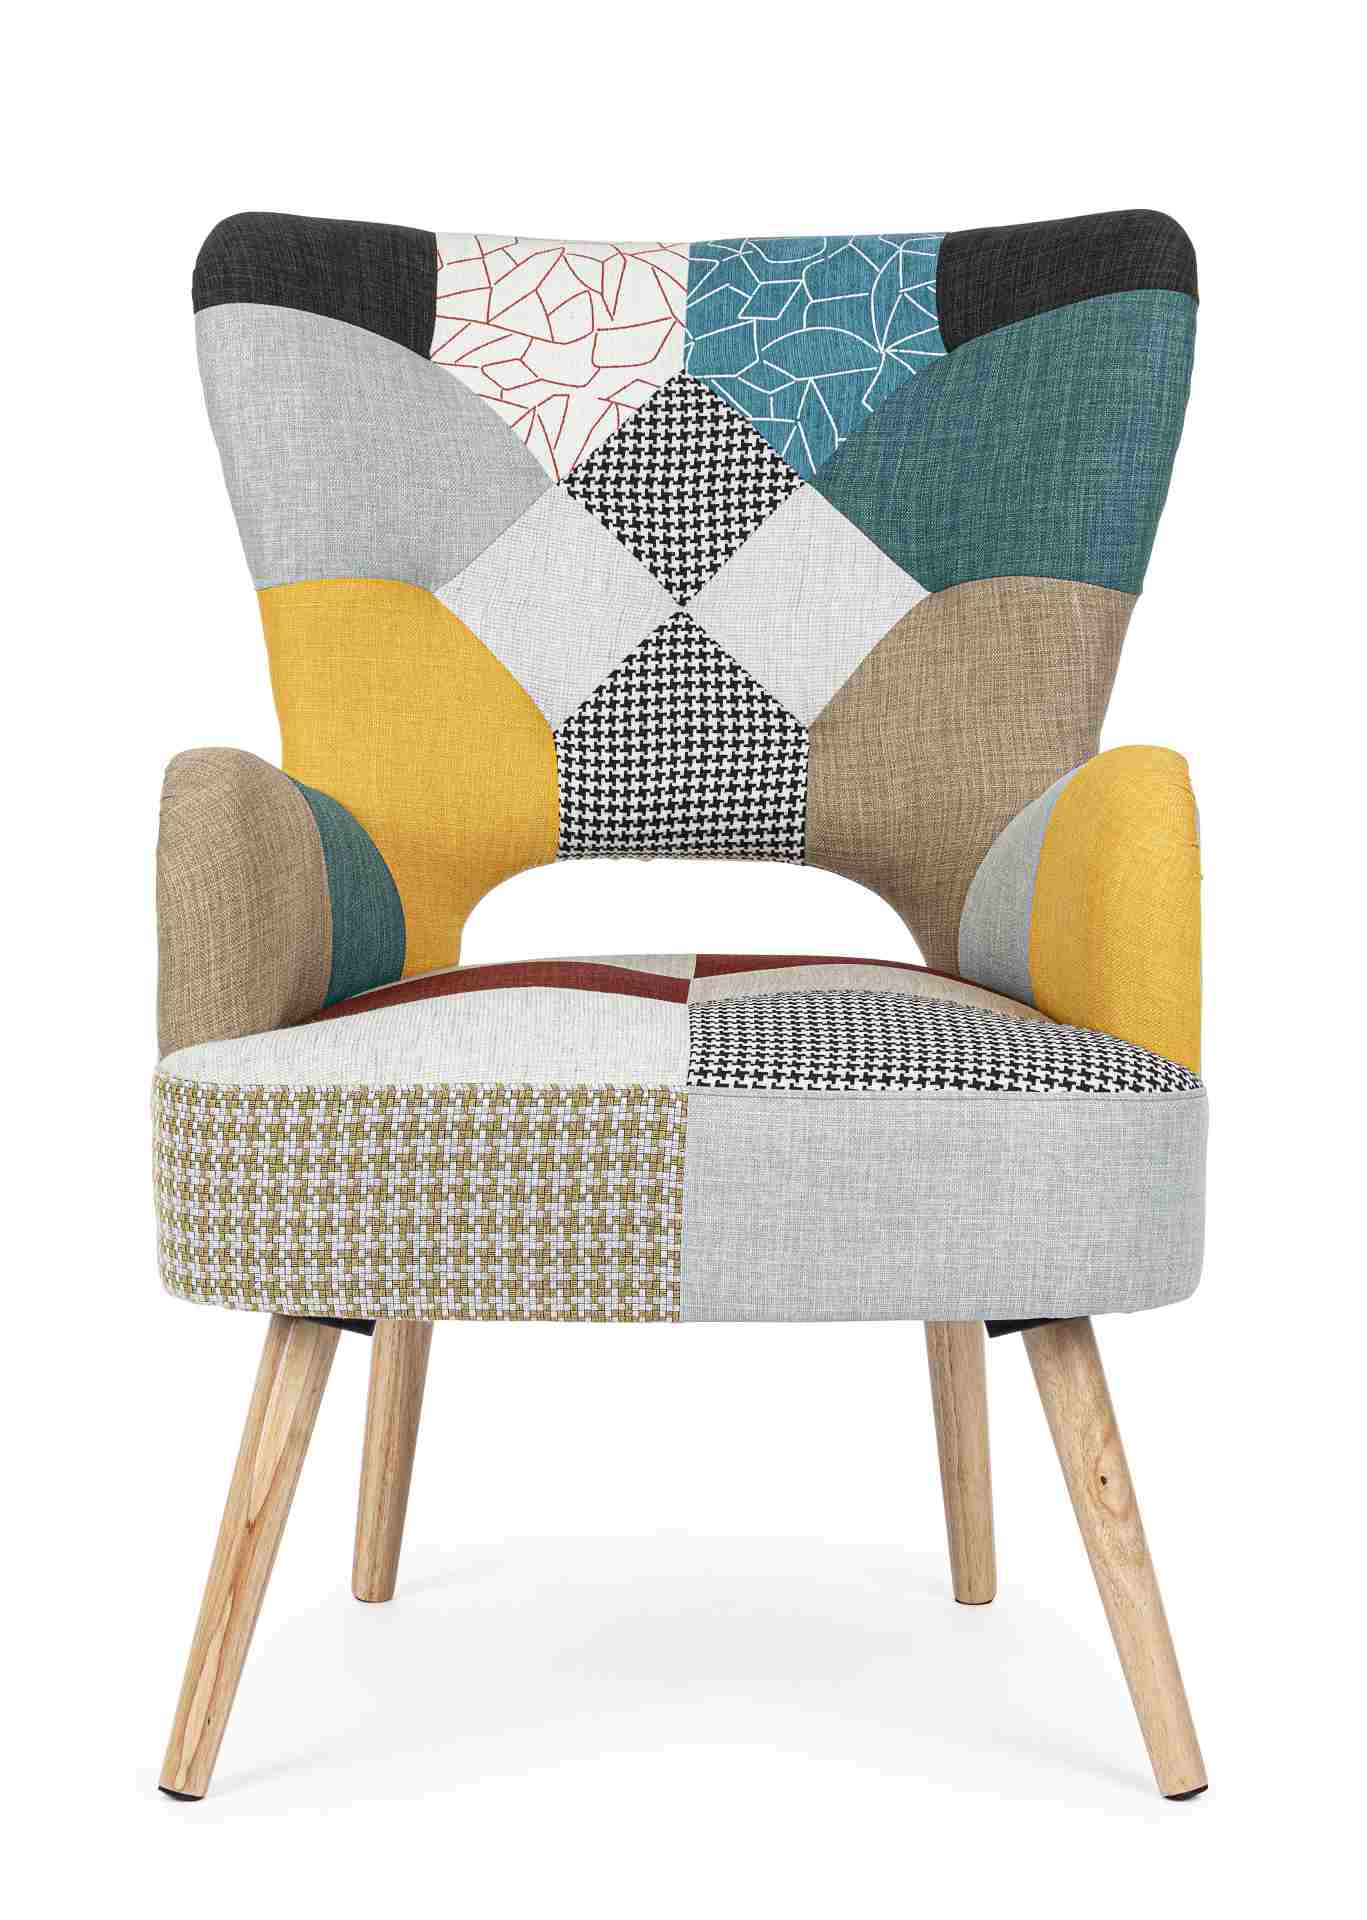 Der Sessel Galatea überzeugt mit seinem klassischen Design. Gefertigt wurde er aus Stoff, welcher einen mehrfarbigen Farbton besitzt. Das Gestell ist aus Kautschukholz und hat eine natürliche Farbe. Der Sessel besitzt eine Sitzhöhe von 45 cm. Die Breite b